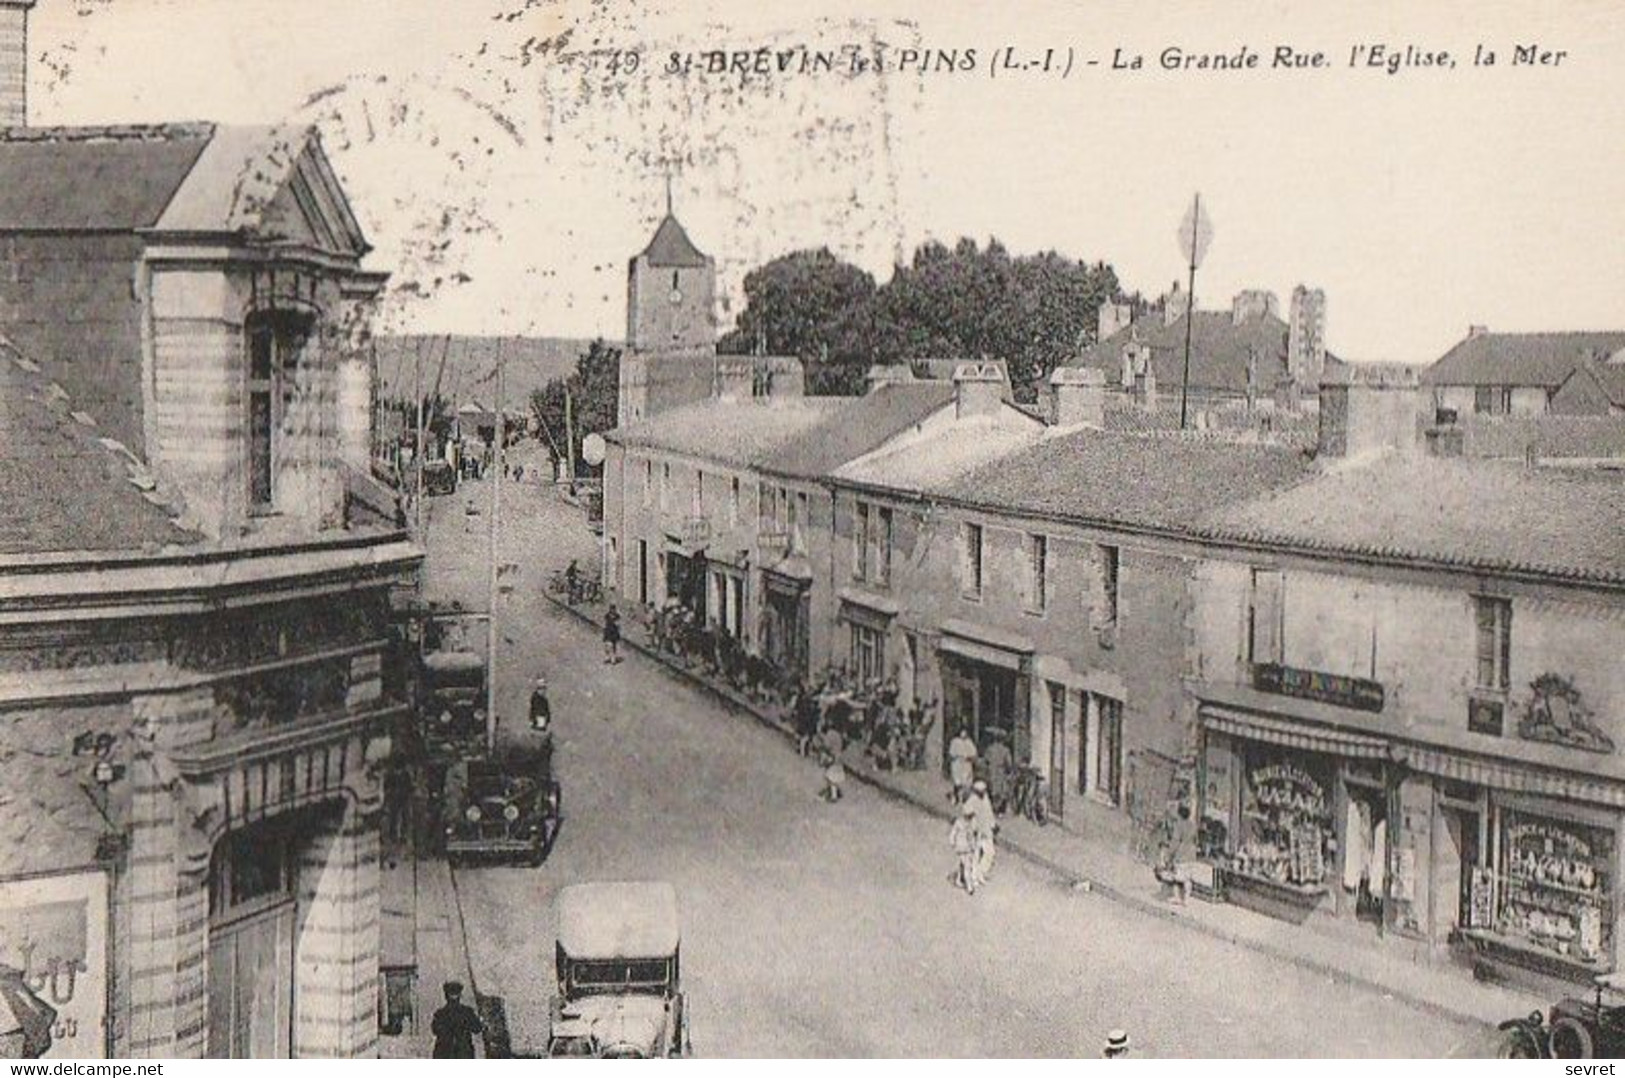 St-BREVIN-les-PINS. - La Grande Rue, L'Eglise, La Mer - Saint-Brevin-les-Pins